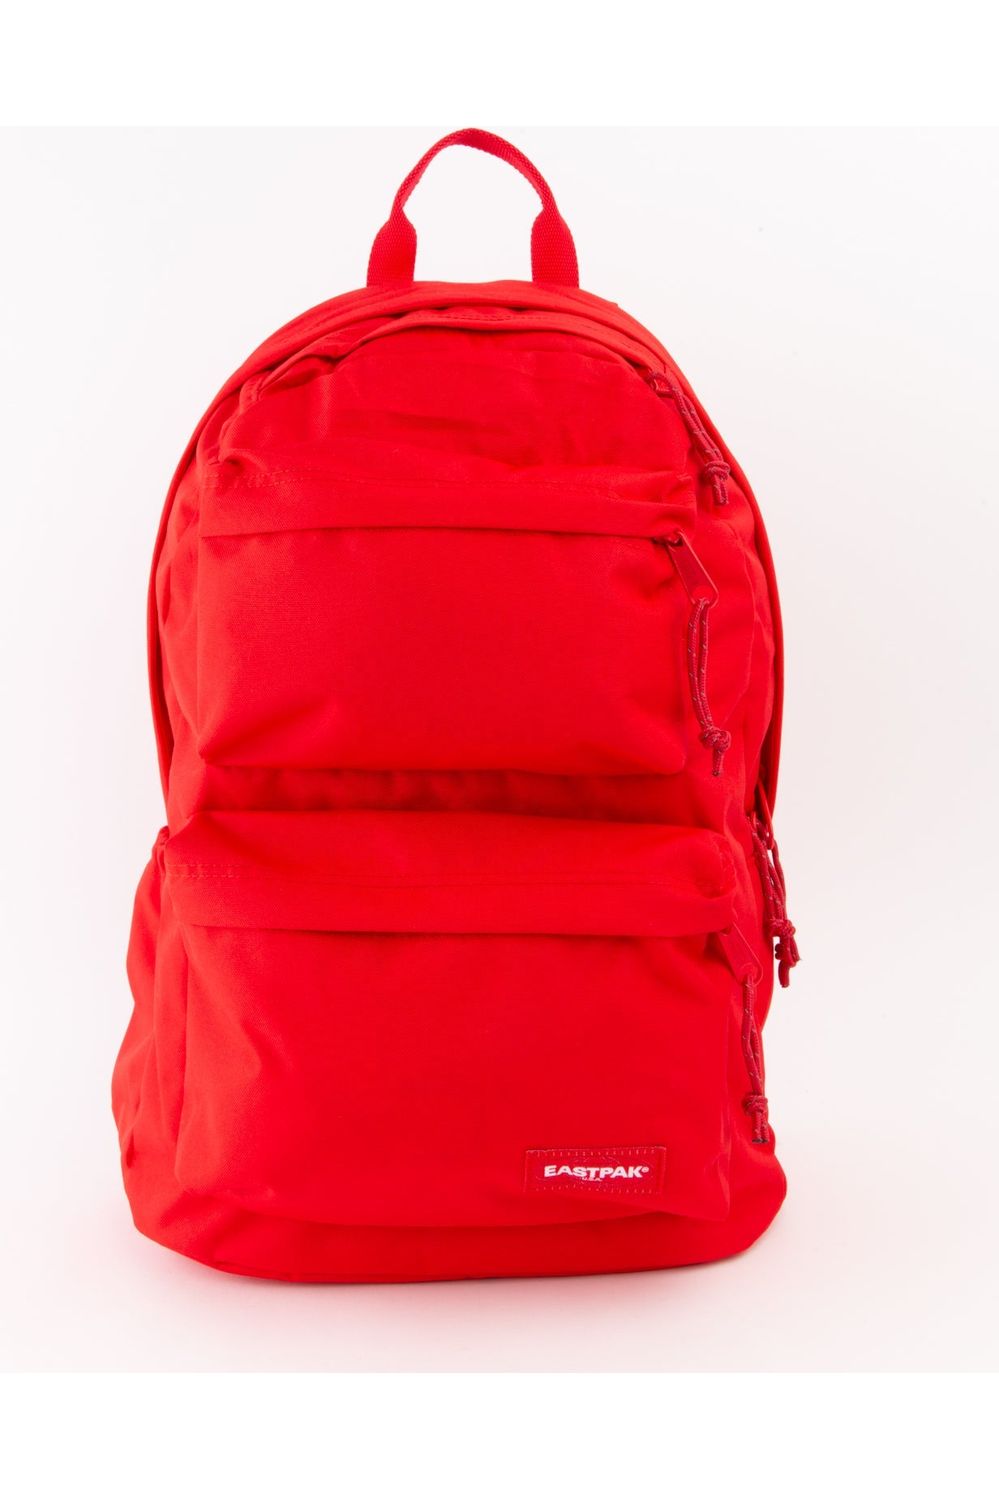  Eastpak Backpacks